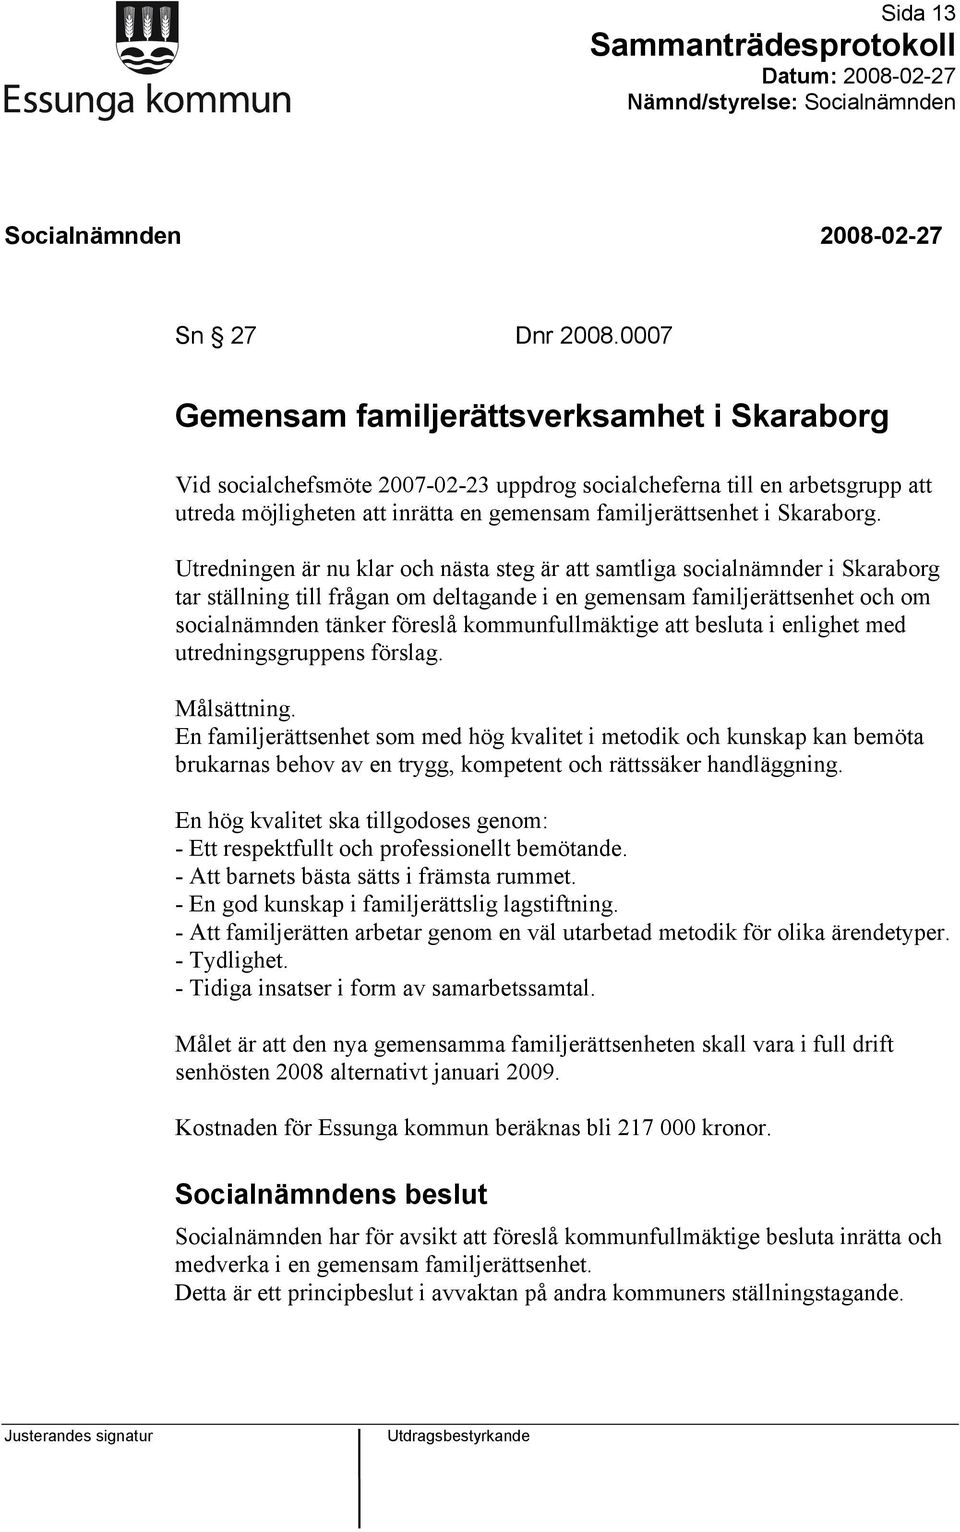 Utredningen är nu klar och nästa steg är att samtliga socialnämnder i Skaraborg tar ställning till frågan om deltagande i en gemensam familjerättsenhet och om socialnämnden tänker föreslå